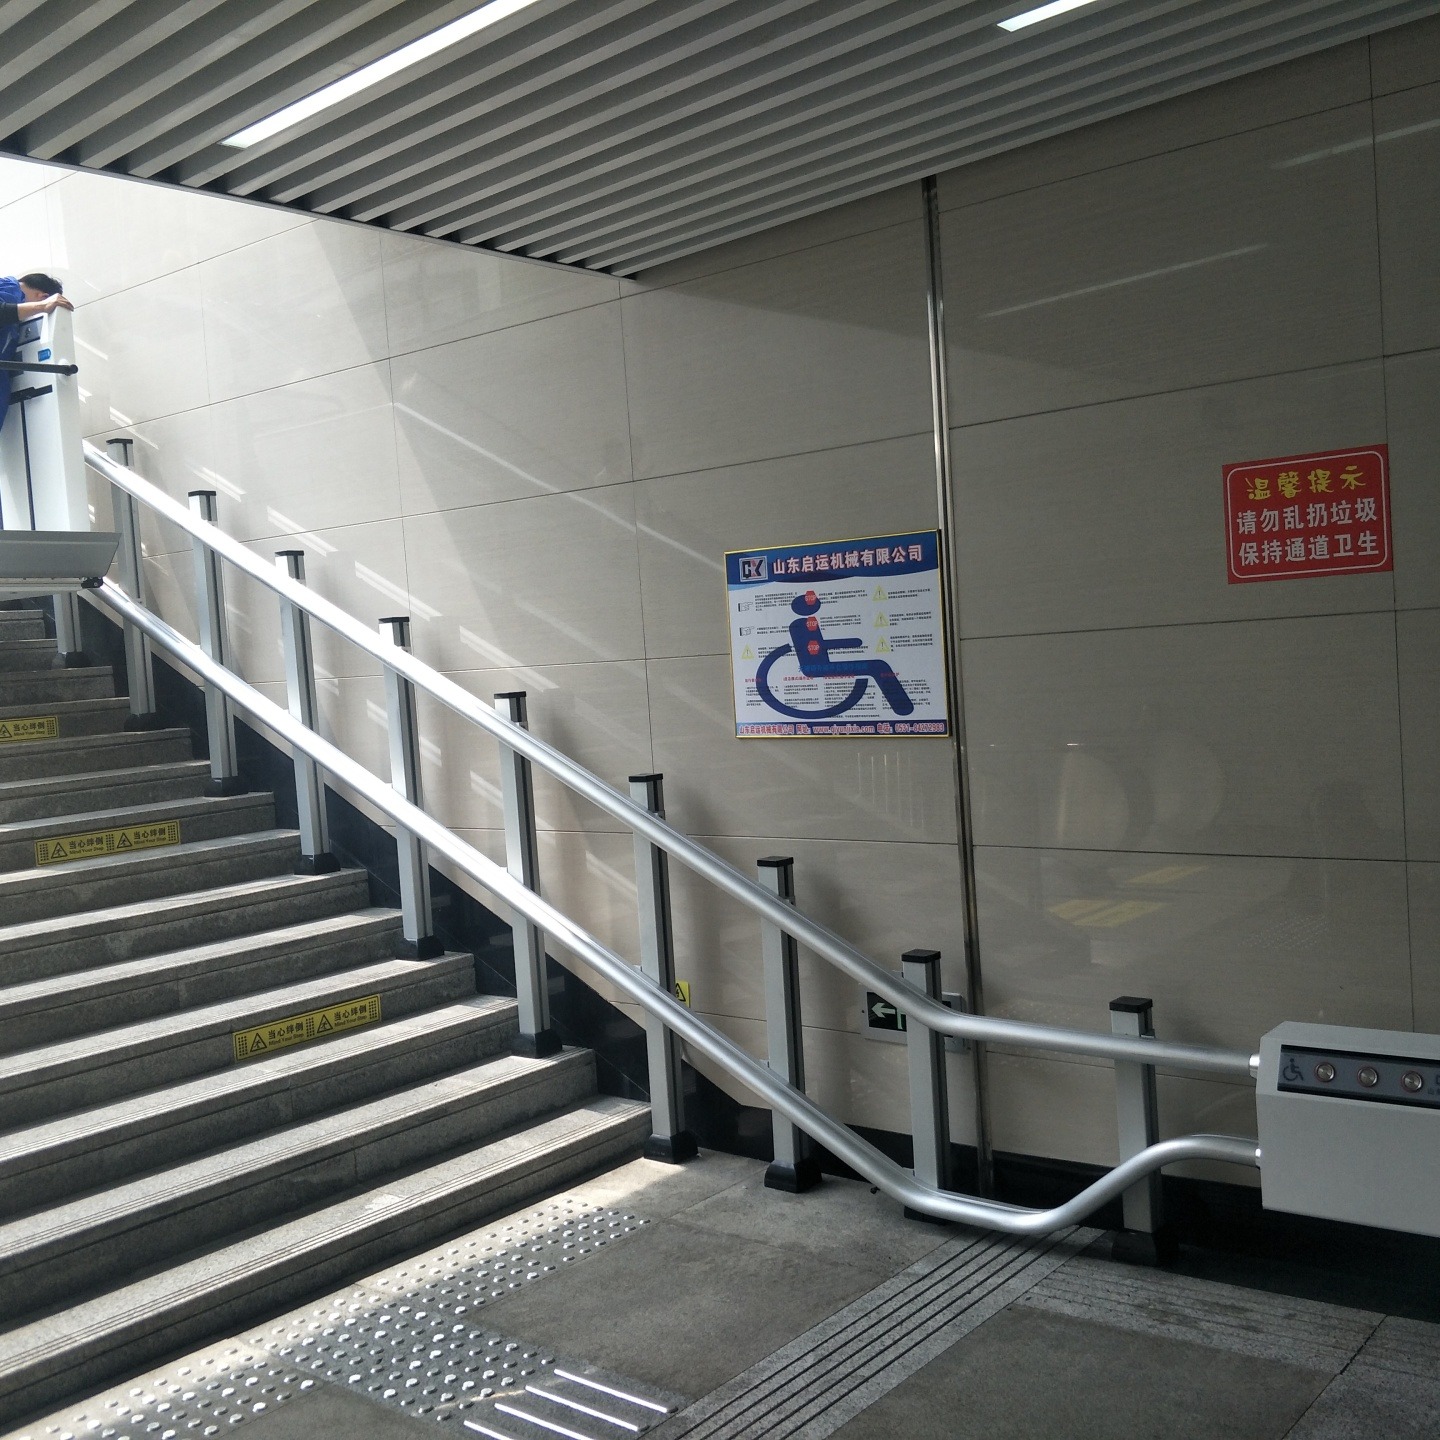 地铁无障碍升降梯 轮椅爬楼设备 爬楼斜挂式电梯荷塘区